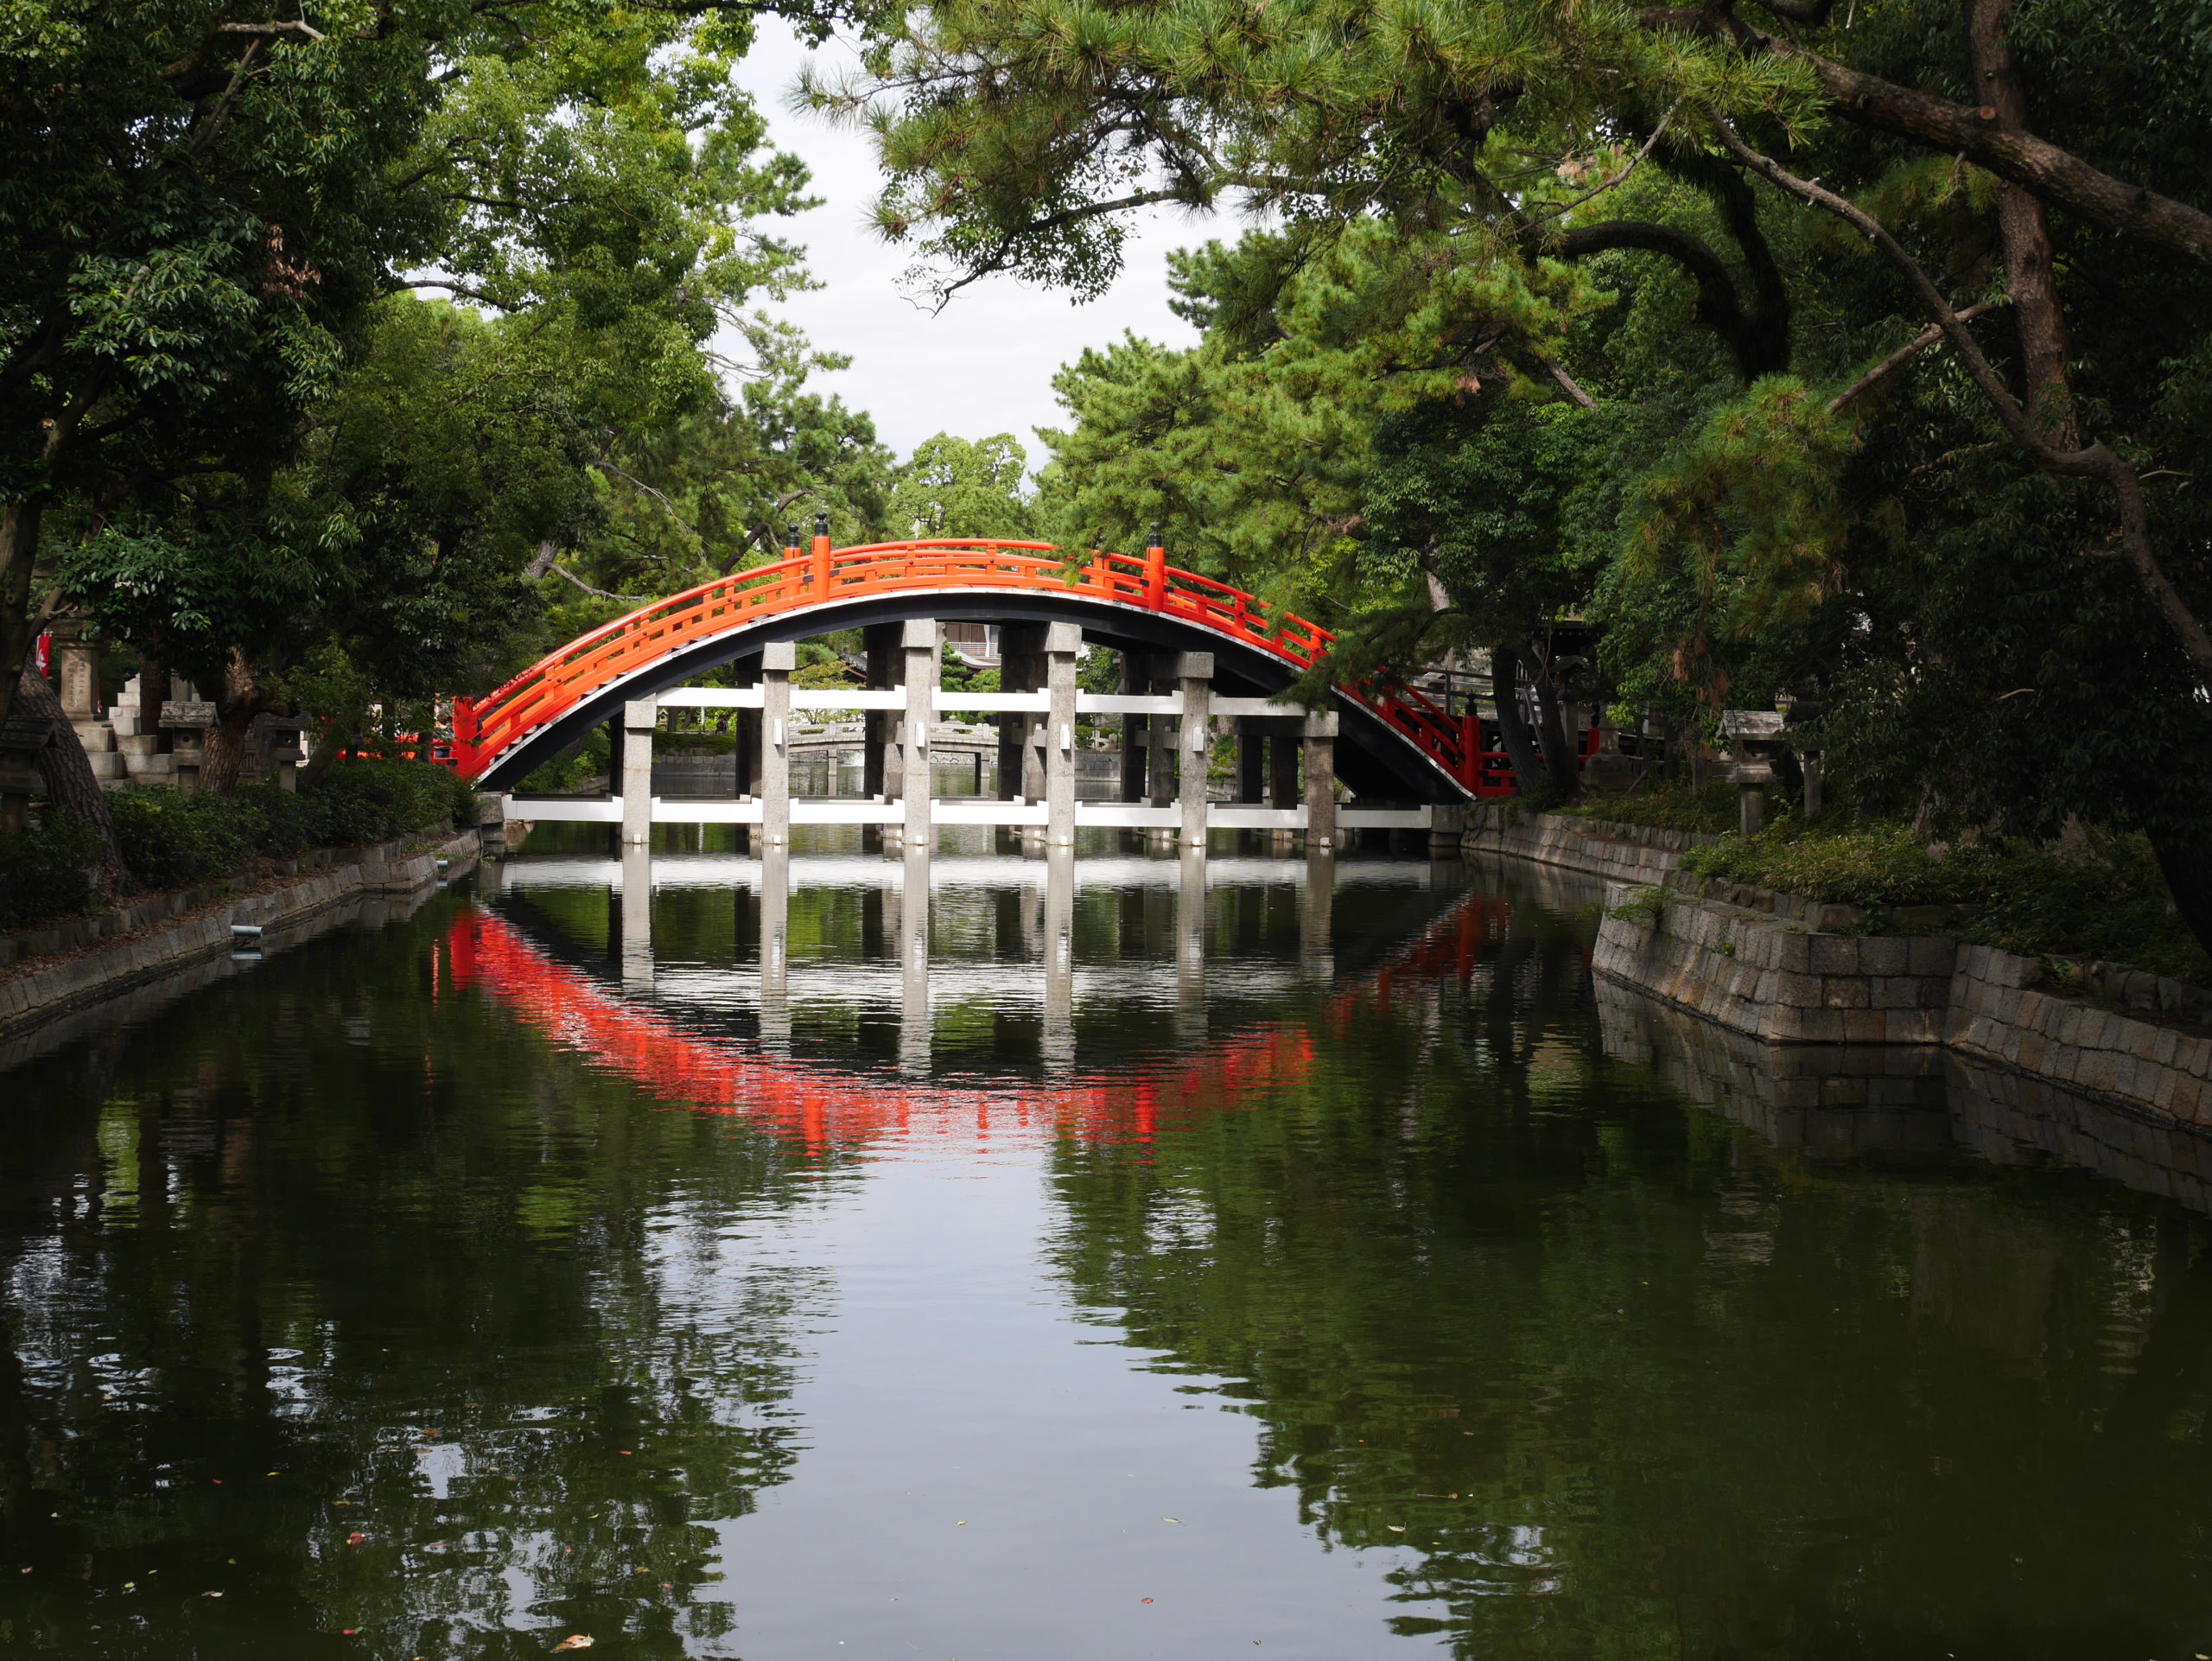 住吉神社で橋が綺麗に映る場所